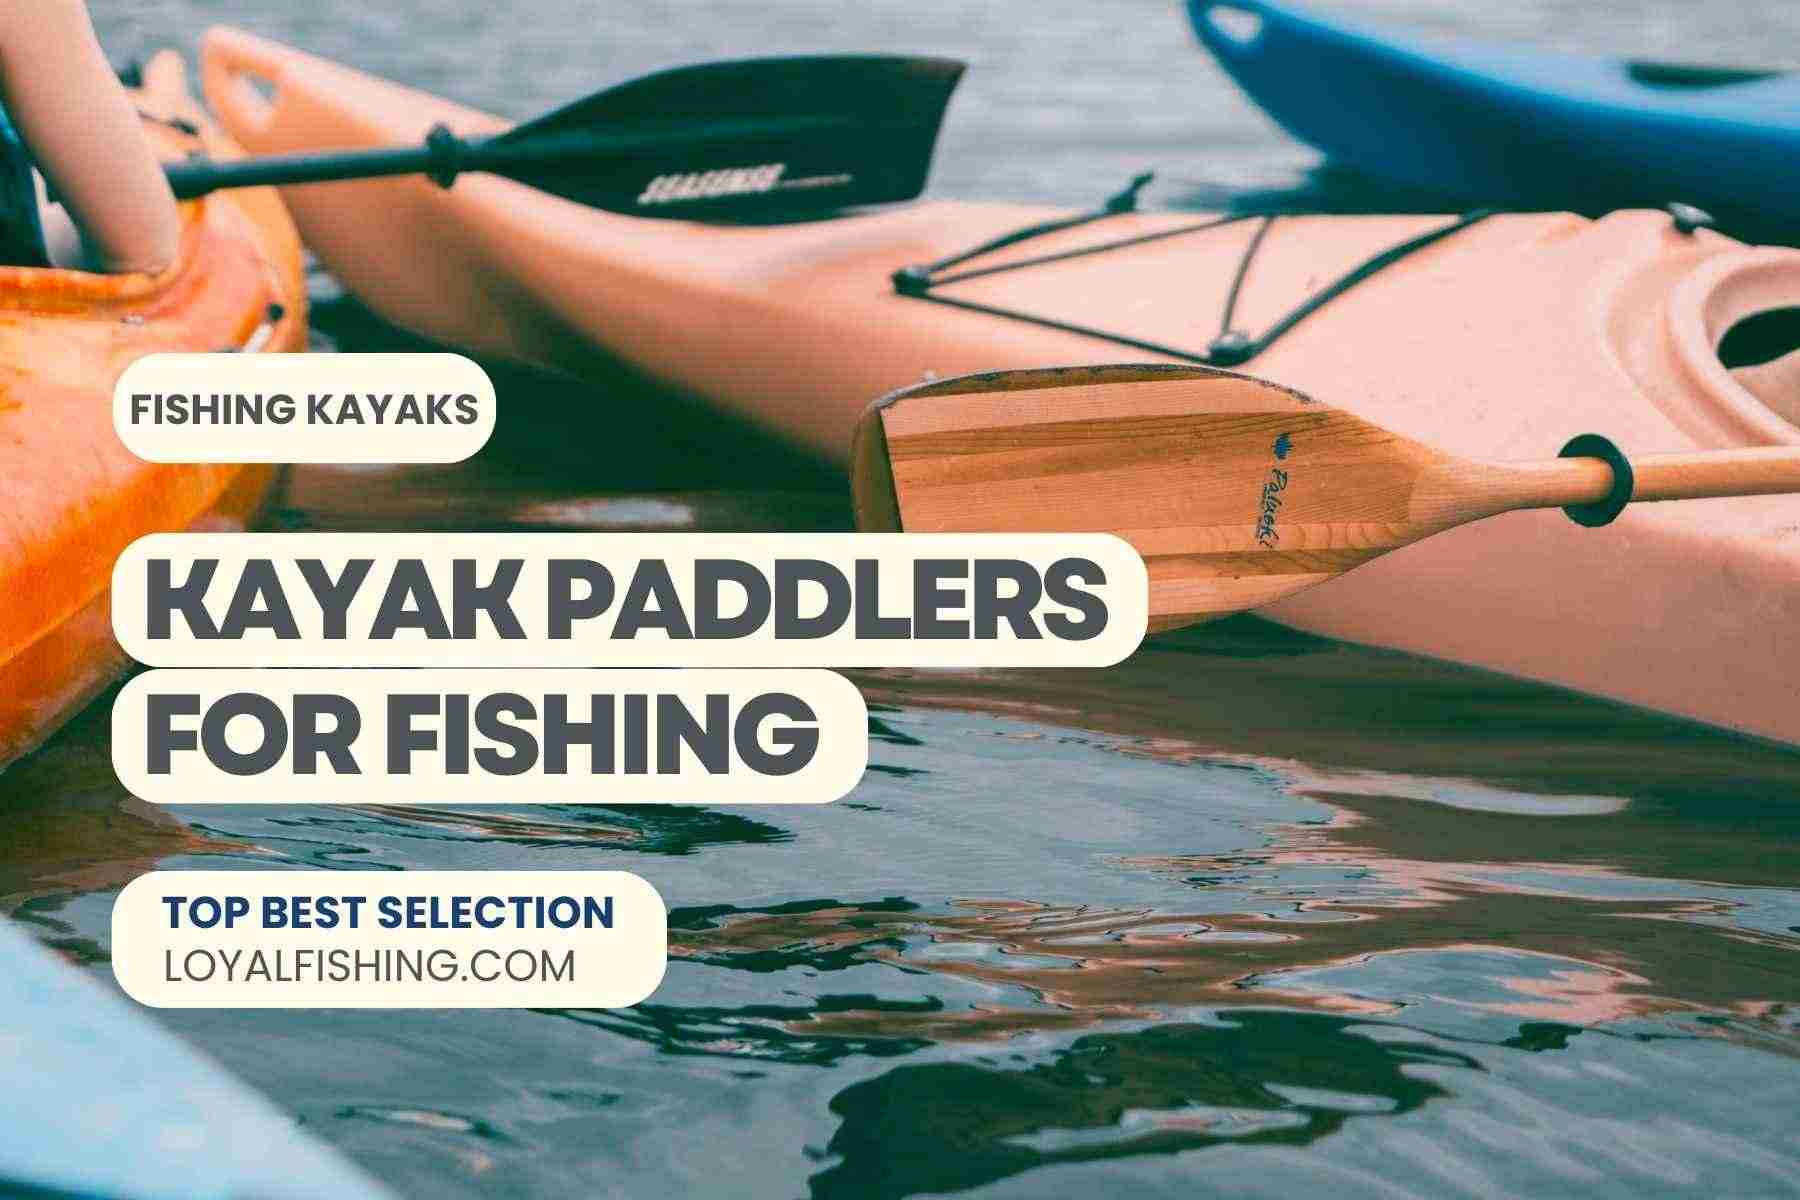 Kayak Paddlers for Fishing